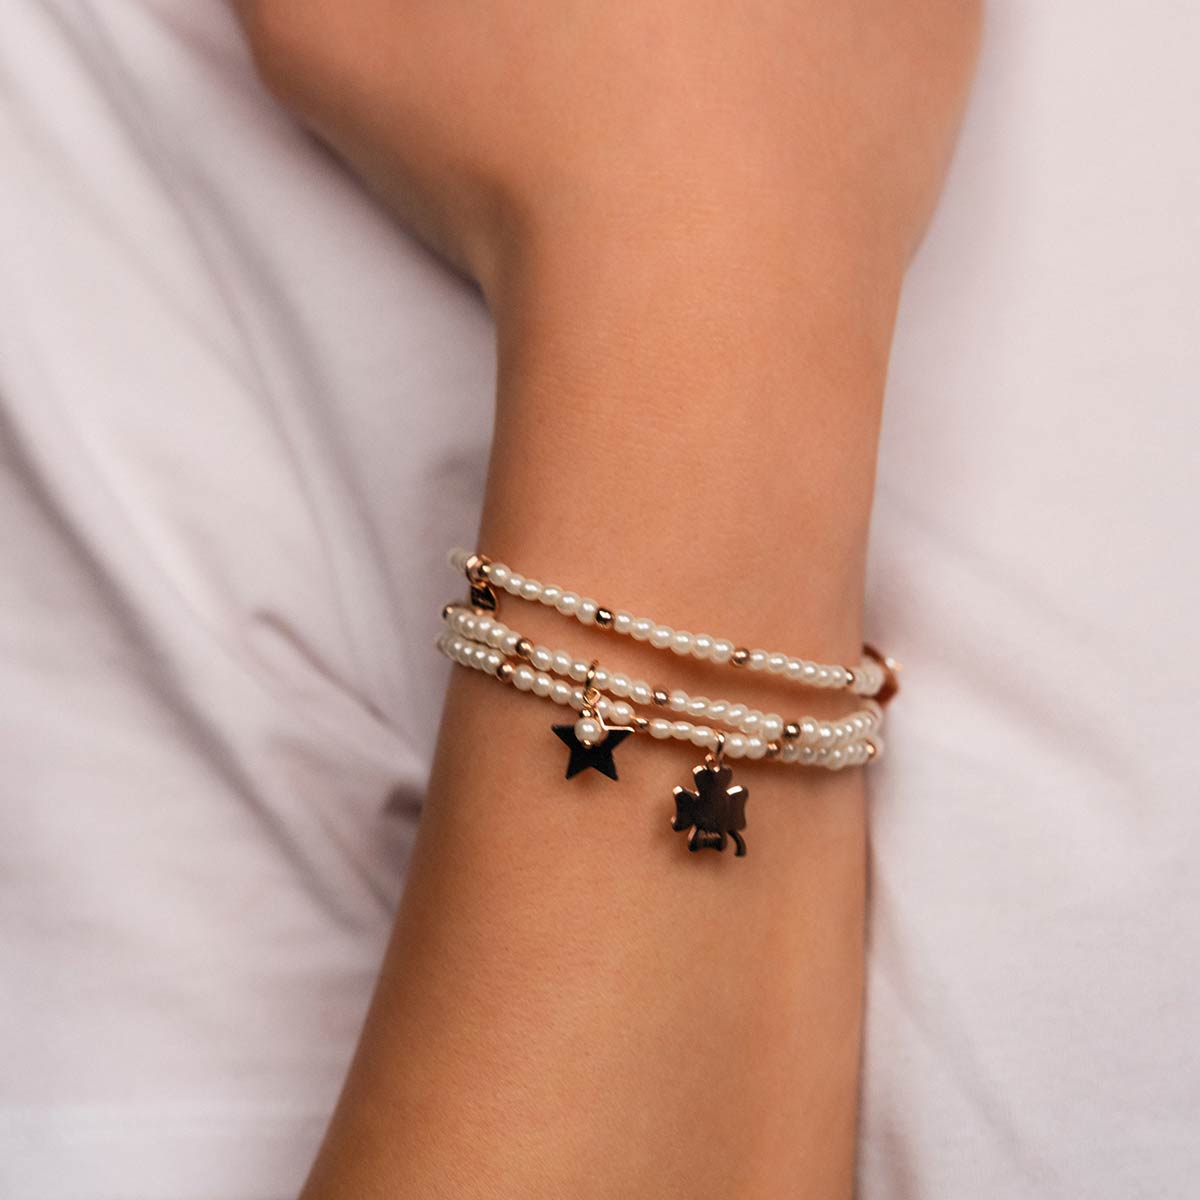 Bracelets - Elastic bracelet with pearls and balls - STAR - 2 | Rue des Mille